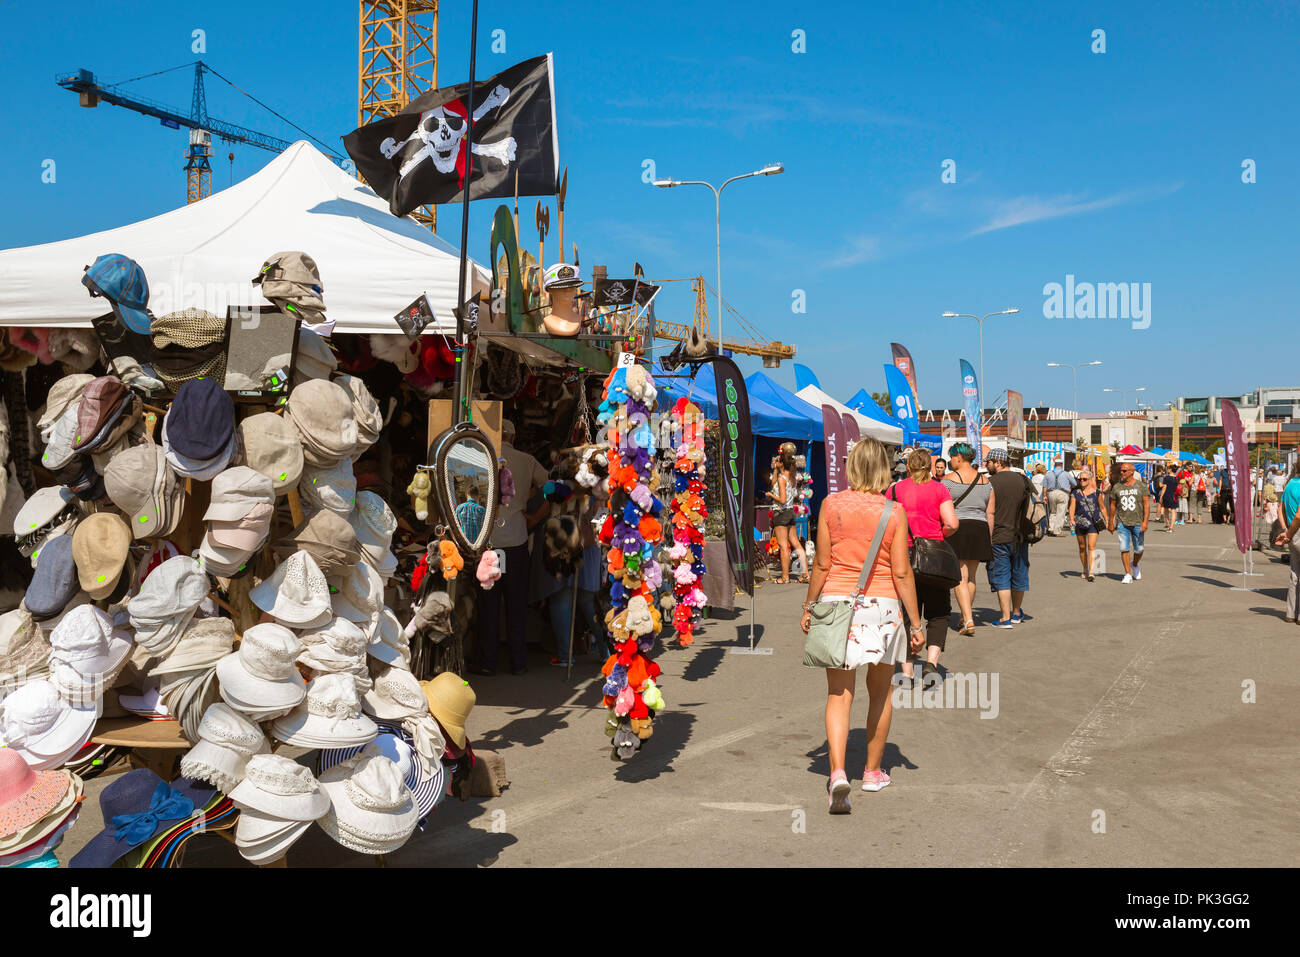 Tallinn market, view of the Sunday Market sited on Kuunari in the Kalamaja harbor area of Tallinn, Estonia. Stock Photo